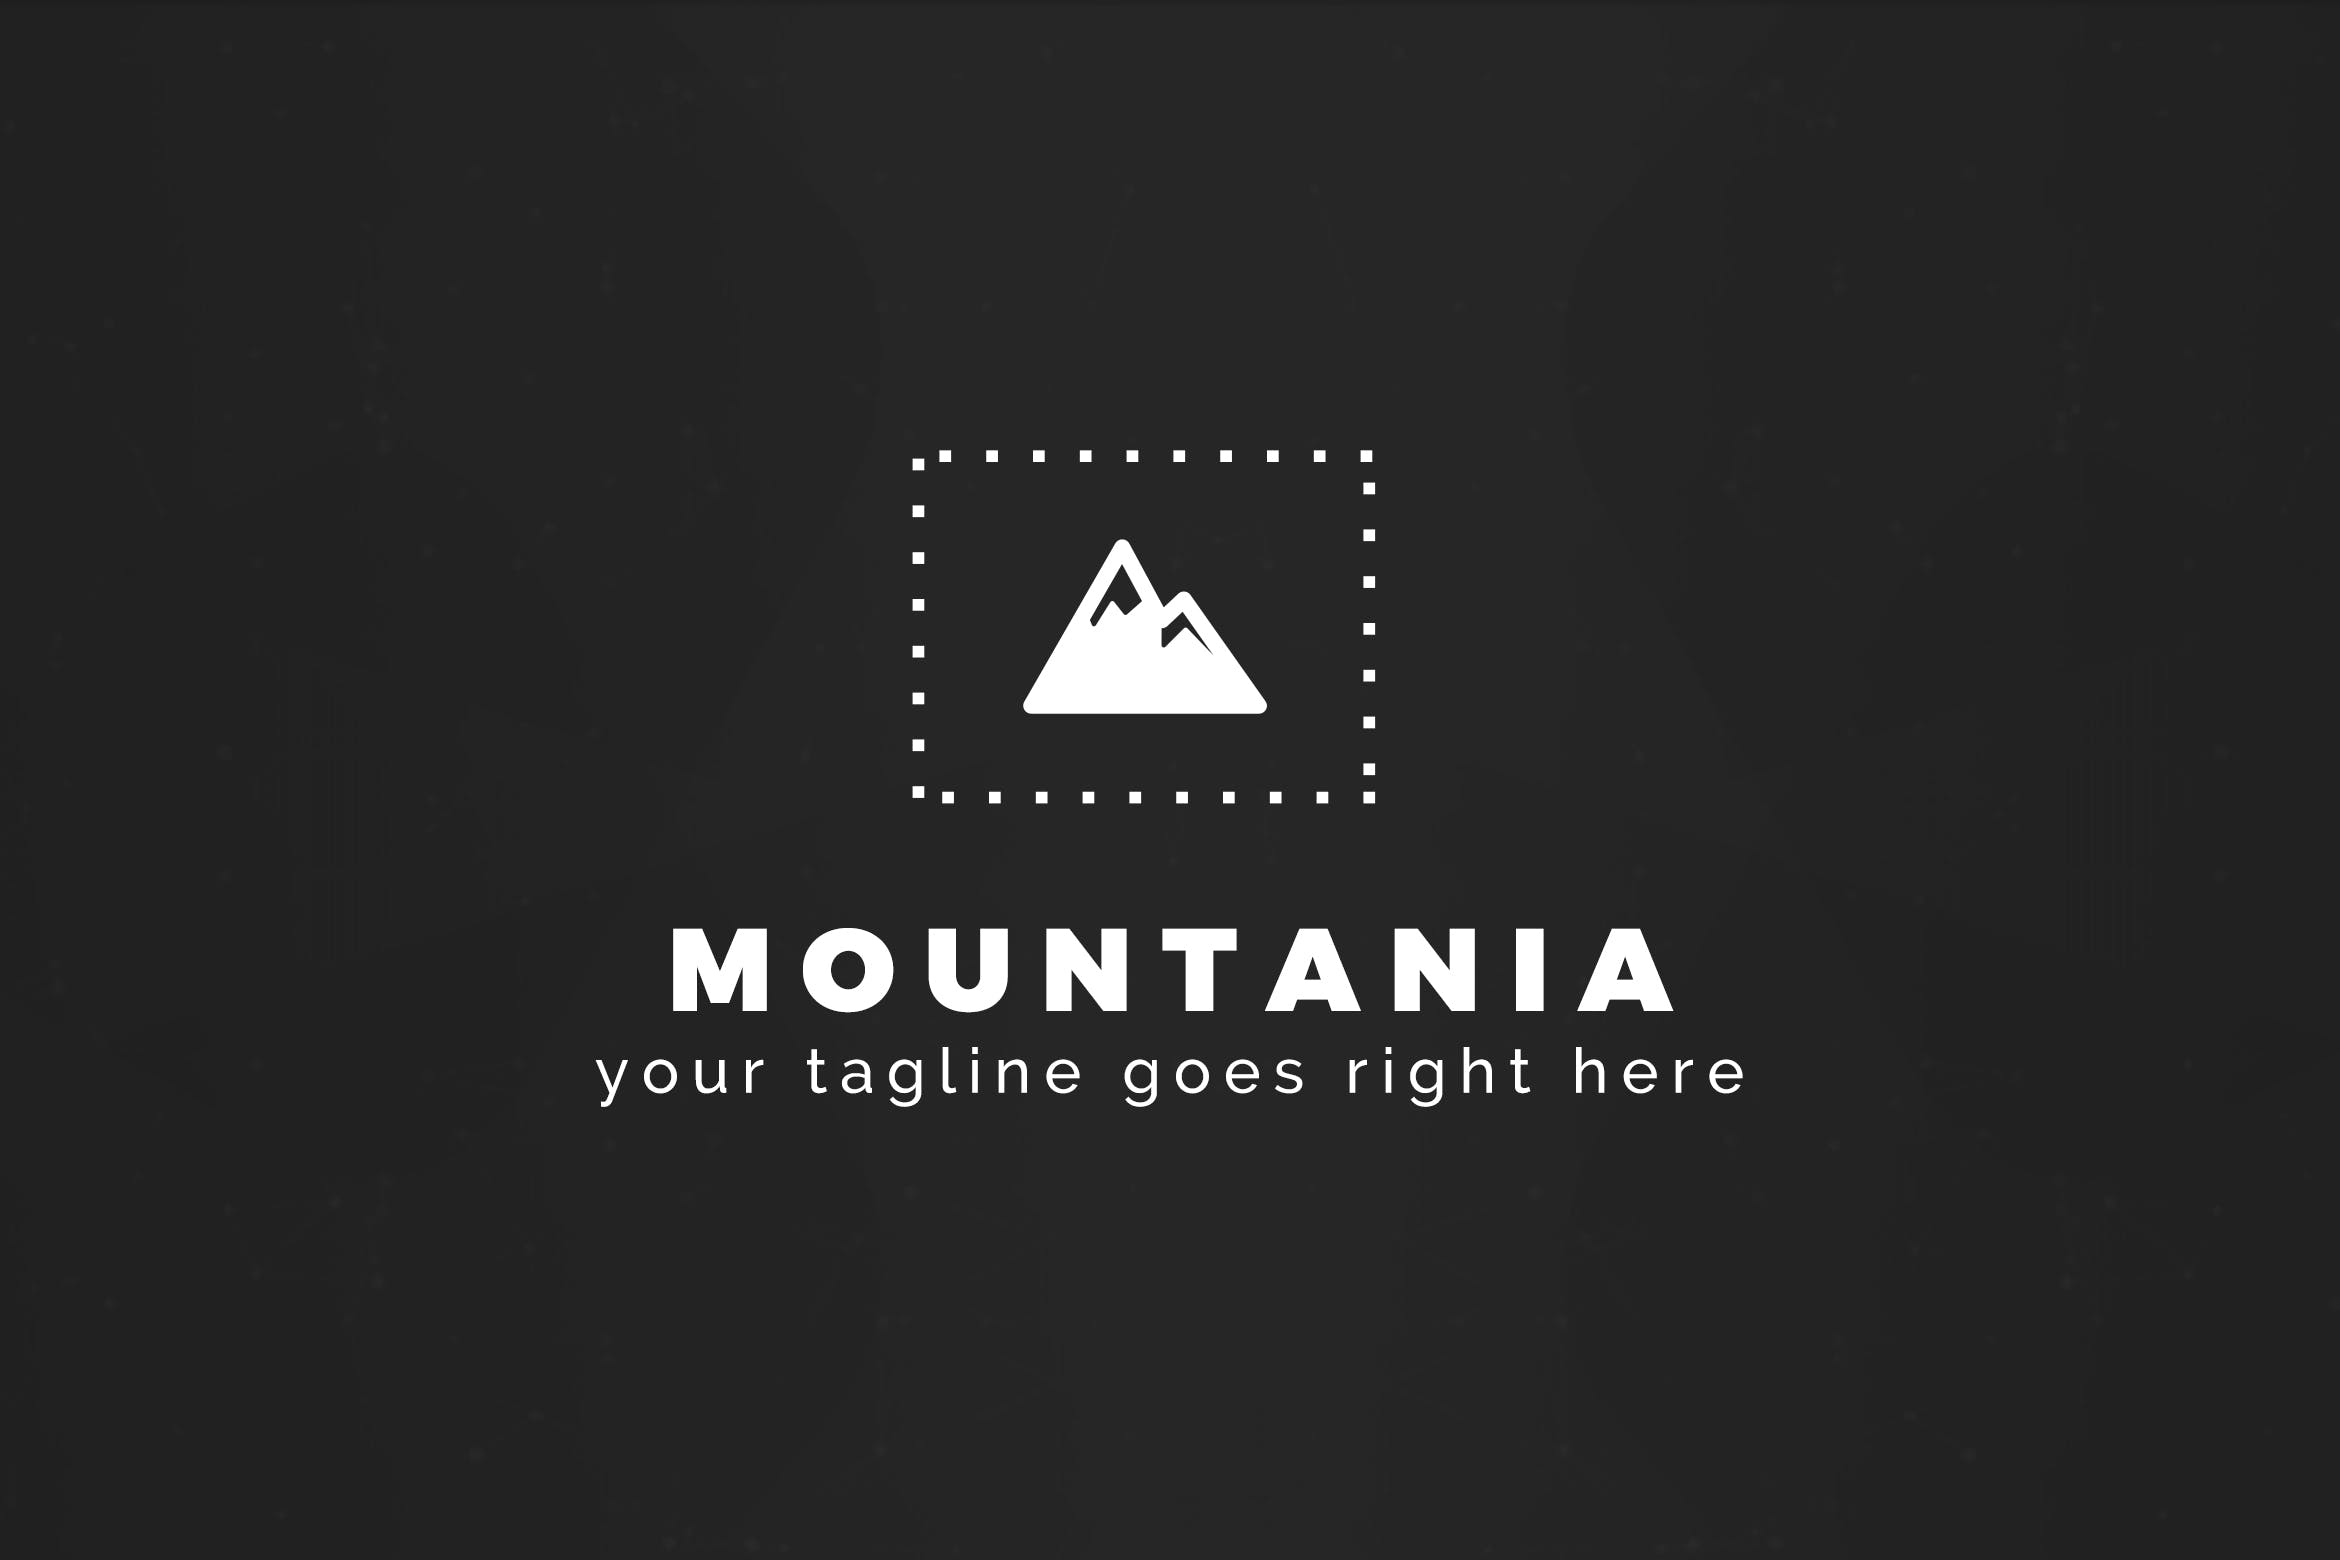 户外运动品牌山岭图形Logo设计第一素材精选模板 Mountania – Premium Logo Template插图